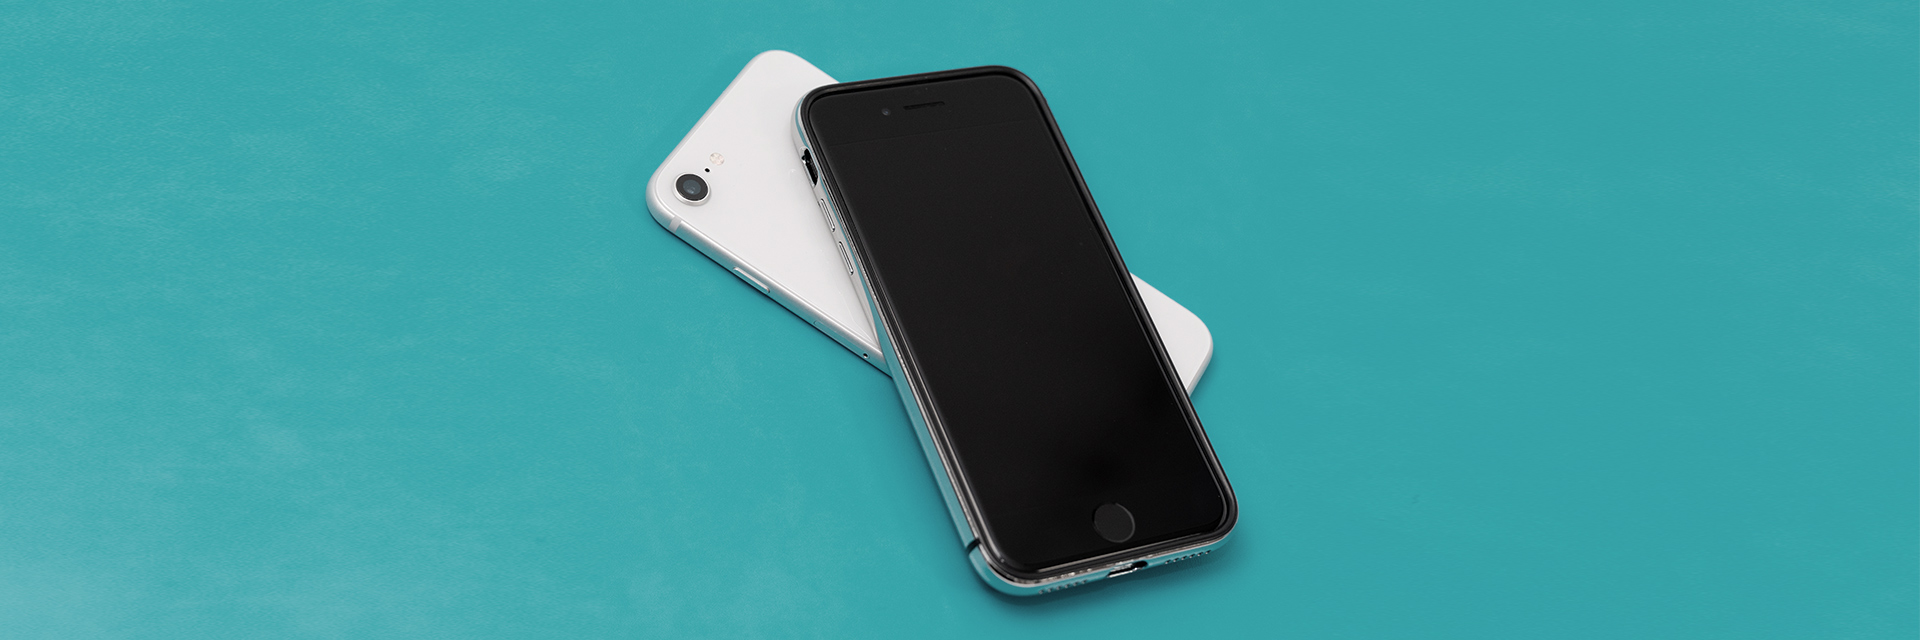 新型iphone Se 第2世代 向けおすすめケース種類別まとめ 耐衝撃性やグリップ感のあるものから手帳型まで厳選 ガジェットショット